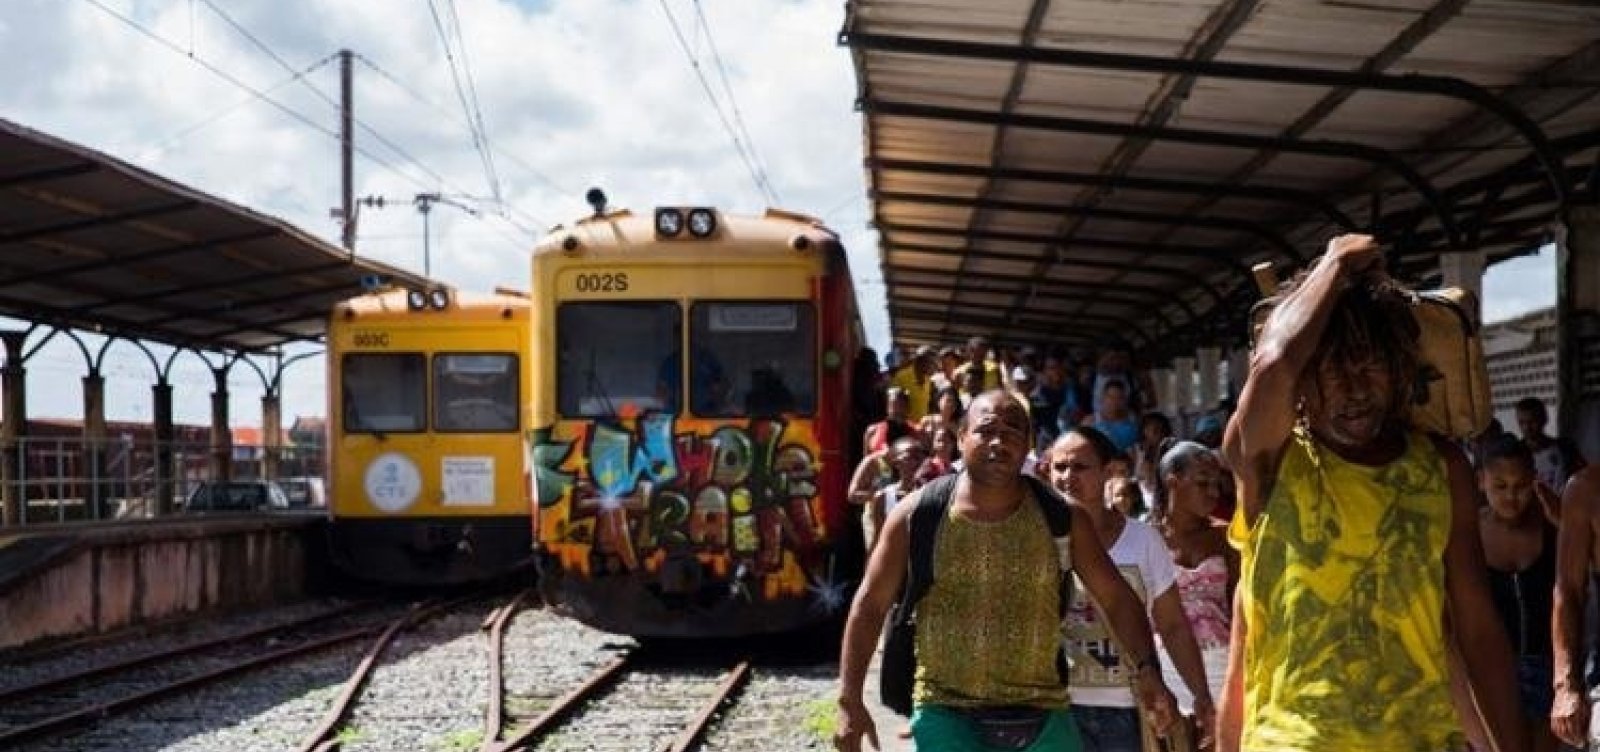 Maioria dos passageiros do trem do Subúrbio não pode pagar ônibus, diz pesquisa